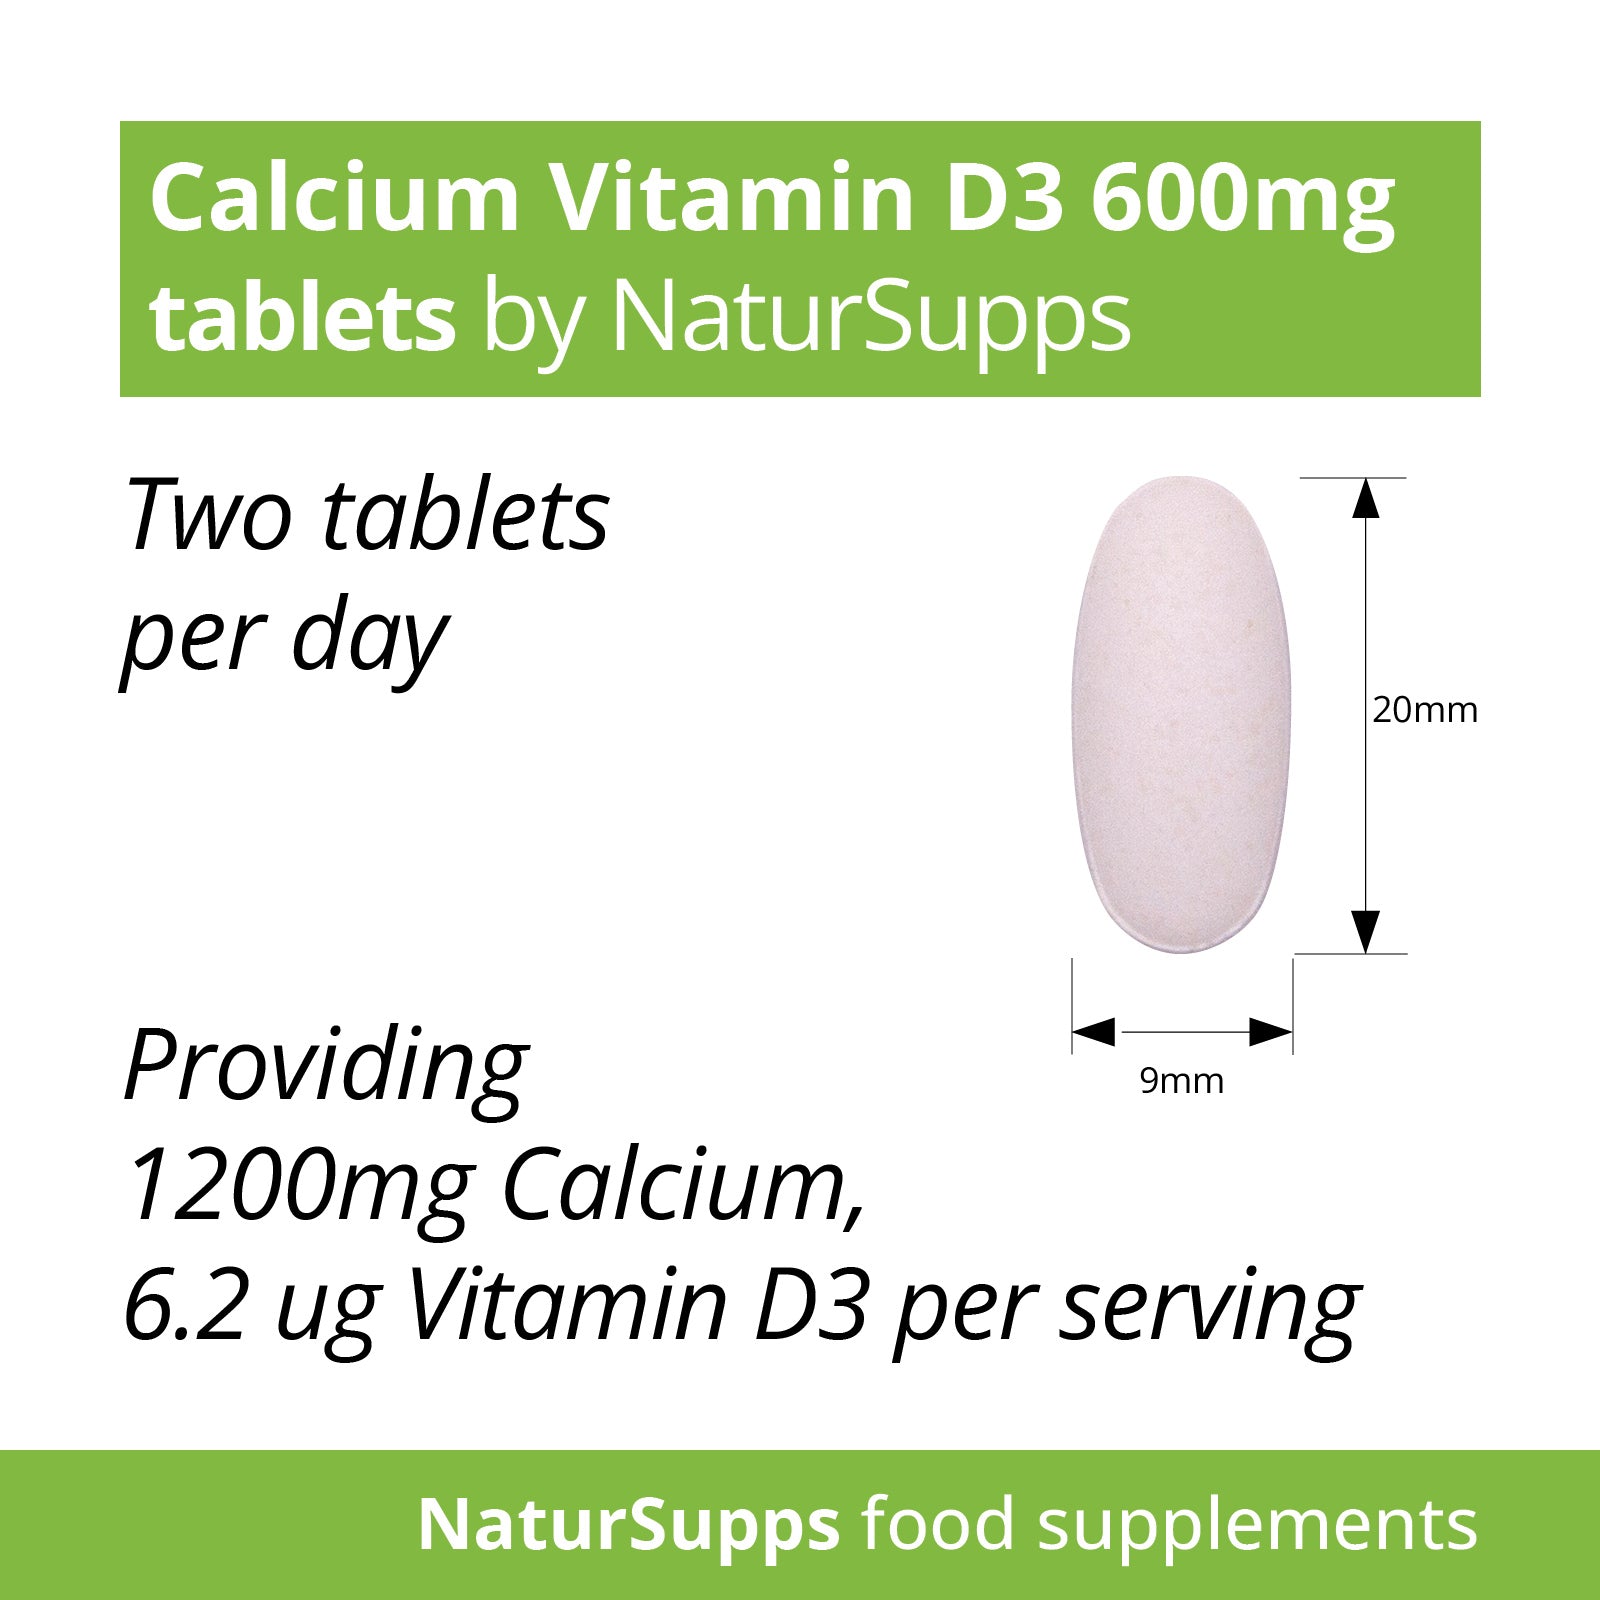 Calcium 600mg & Vitamin D3